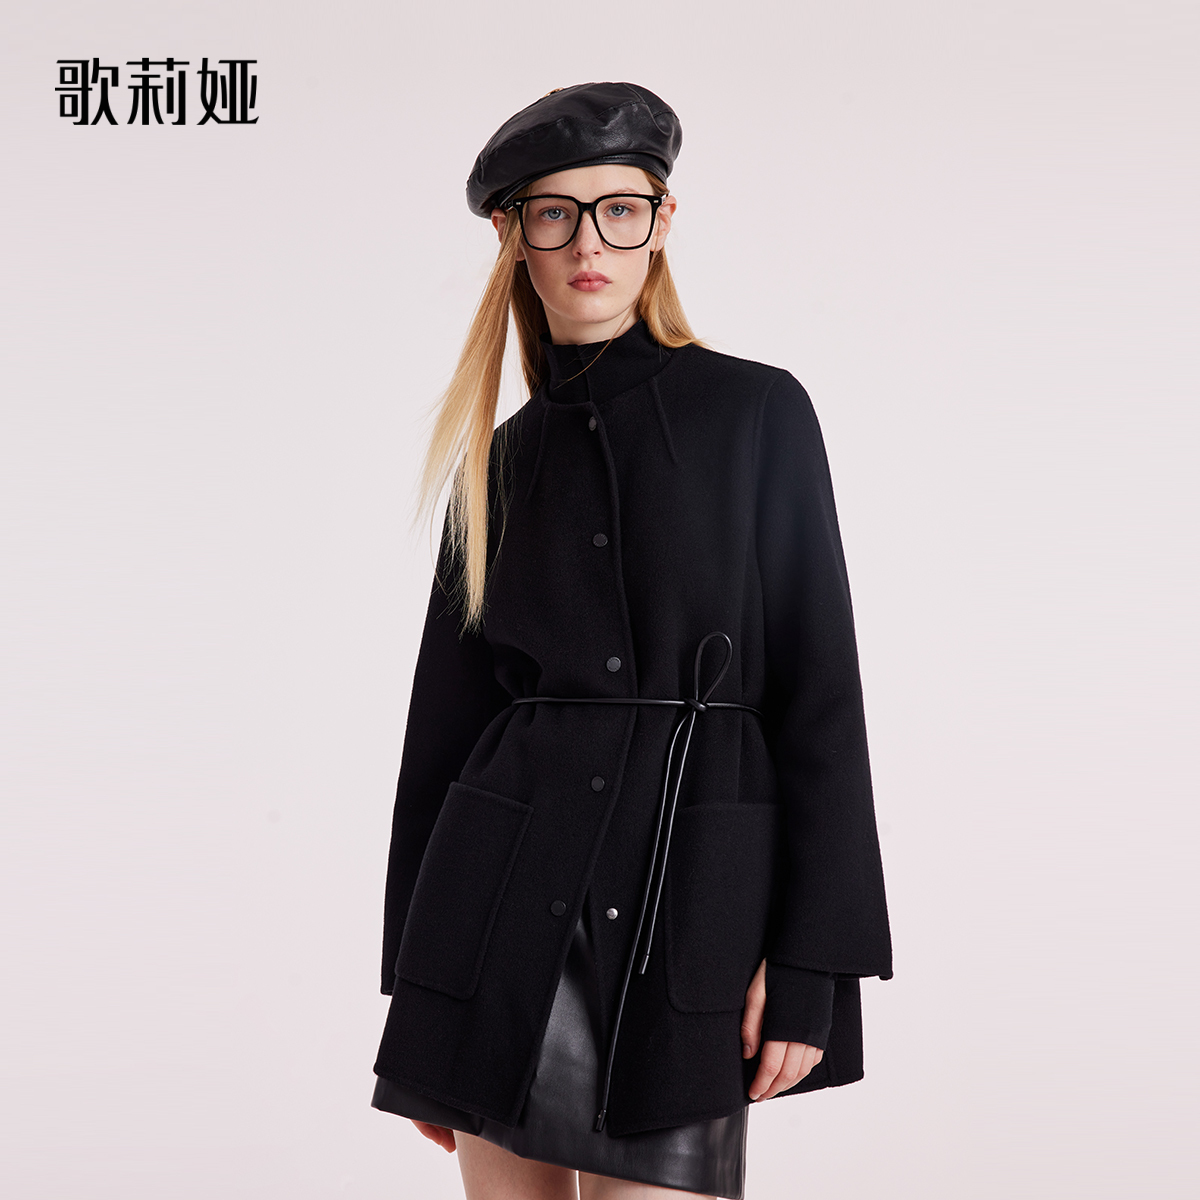 歌莉娅冬季新款天丝羊毛双面呢大衣显瘦立领黑色外套女1BNJ6N140